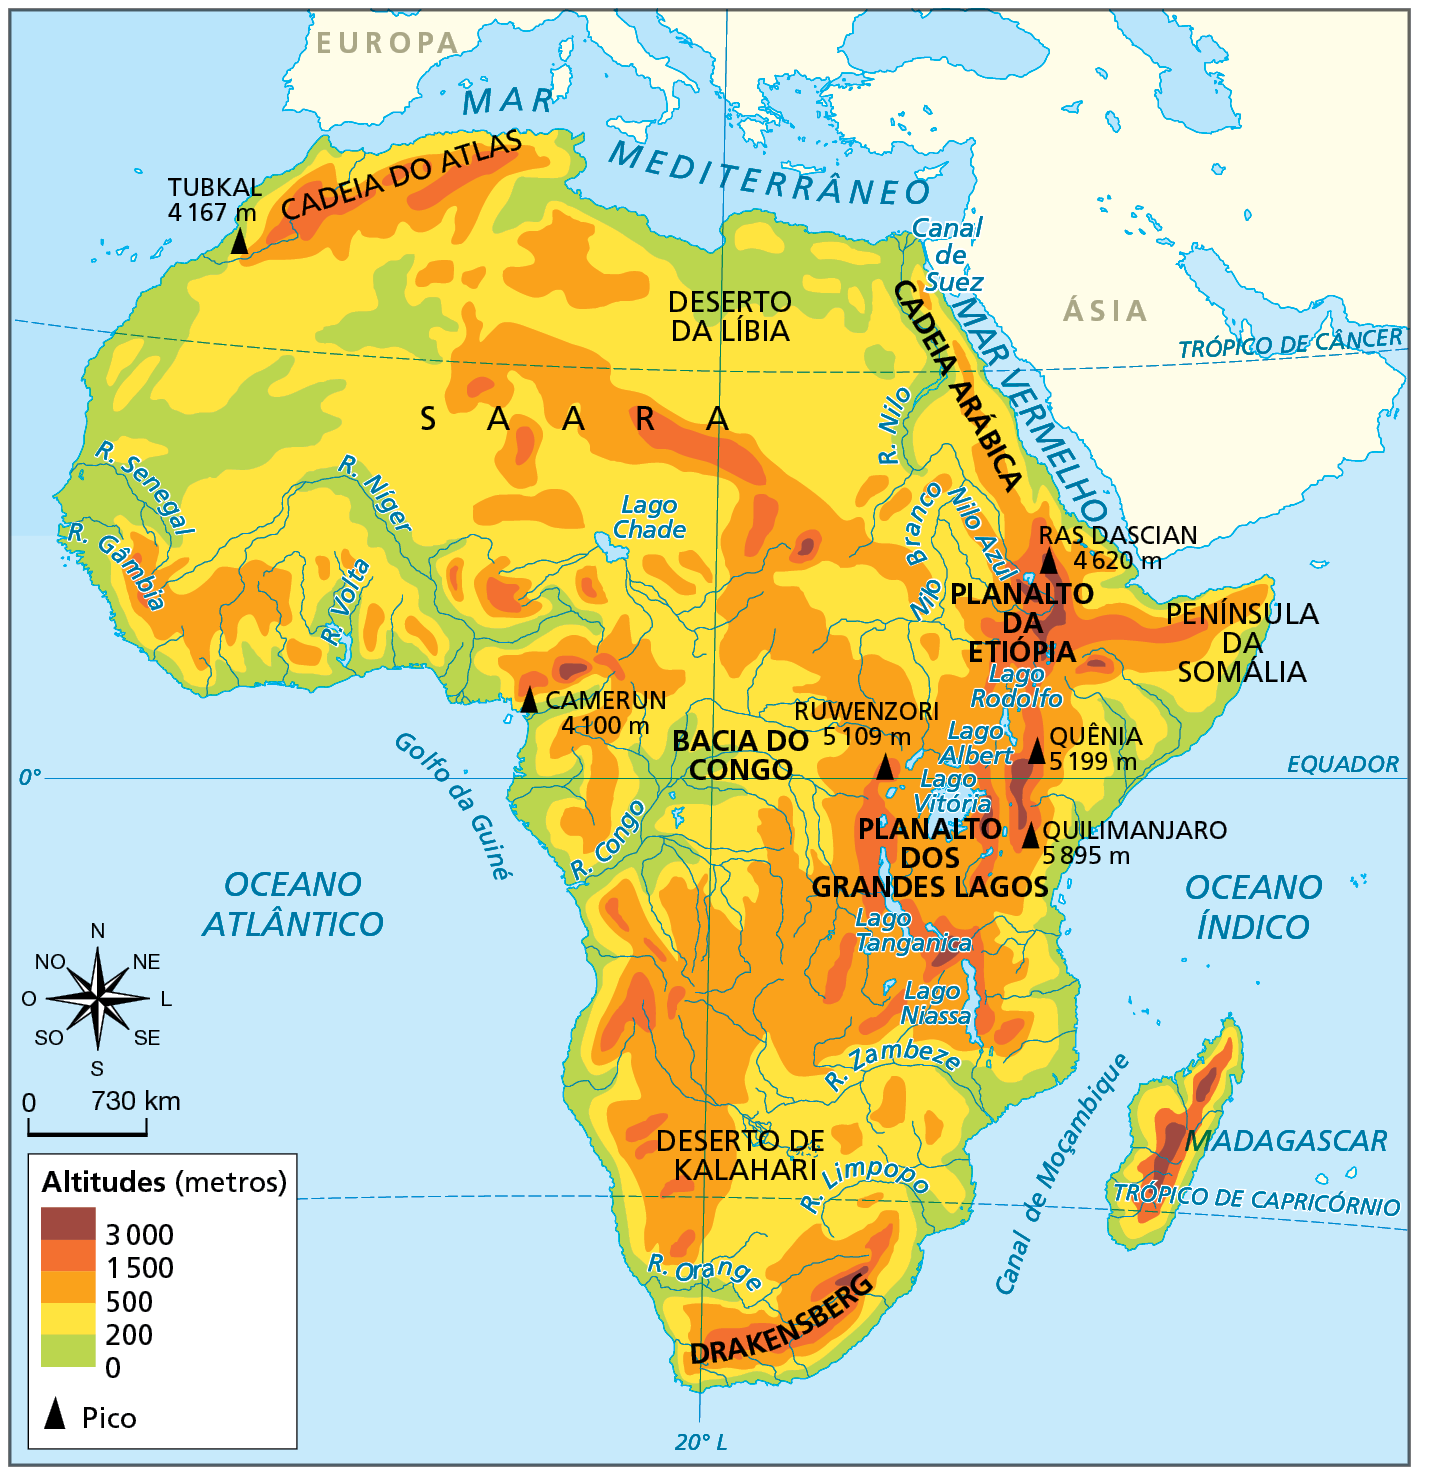 Mapa. África: físico. Mapa da África representando as características físicas do território, como altitudes, principais rios e picos. Altitudes (metros)  Acima de 3.000 metros: área no Planalto da Etiópia, localizado a nordeste do continente, onde há o pico Ras Dascian de 4.620 metros. Também a leste do continente, próximo aos lagos Rodolfo, Albert e Vitória, no Planalto dos Grandes Lagos, onde estão os picos Quênia (5.199 metros), Quilimanjaro (5.895 metros) e Ruwenzori (5.109 metros); sudeste, no centro da ilha de Madagascar há uma faixa de 3.000 metros; a oeste, pequena área próxima ao litoral do Golfo da Guiné, onde está o pico Camerun, (4.100 metros). De 1.500 a 3.000 metros: áreas na porção noroeste do continente onde há a Cadeia do Atlas; a nordeste, no Planalto da Etiópia e na península da Somália; a leste, no Planalto dos Grandes Lagos; a sudeste, na Ilha de Madagascar; e ao sul, em Drakensberg. De 500 a 1.500 metros: extensa área no centro-sul e no centro-oeste do continente; a nordeste, nas bordas do Planalto da Etiópia e na Península da Somália; a leste, no Planalto dos Grandes Lagos; no norte, na cadeia do Atlas; na porção central do Saara.  De 200 a 500 metros: maior parte da porção noroeste e nordeste do continente; em áreas próximas às costas leste e sudeste e ao centro, na Bacia do Congo. 0 a 200 metros: altitude predominante em todo o litoral do continente e nas margens dos principais rios (Senegal, Gâmbia, Níger, Volta, Nilo, Congo e Orange).  Pico:  Quilimanjaro 5.895 metros, Quênia 5.199 metros, Ruwenzori 5.109 metros, Ras Dascian 4.620 metros, Camerun 4.100 metros e Tubkal 4.167 metros.  À esquerda, rosa dos ventos e escala de 0 a 730 quilômetros.